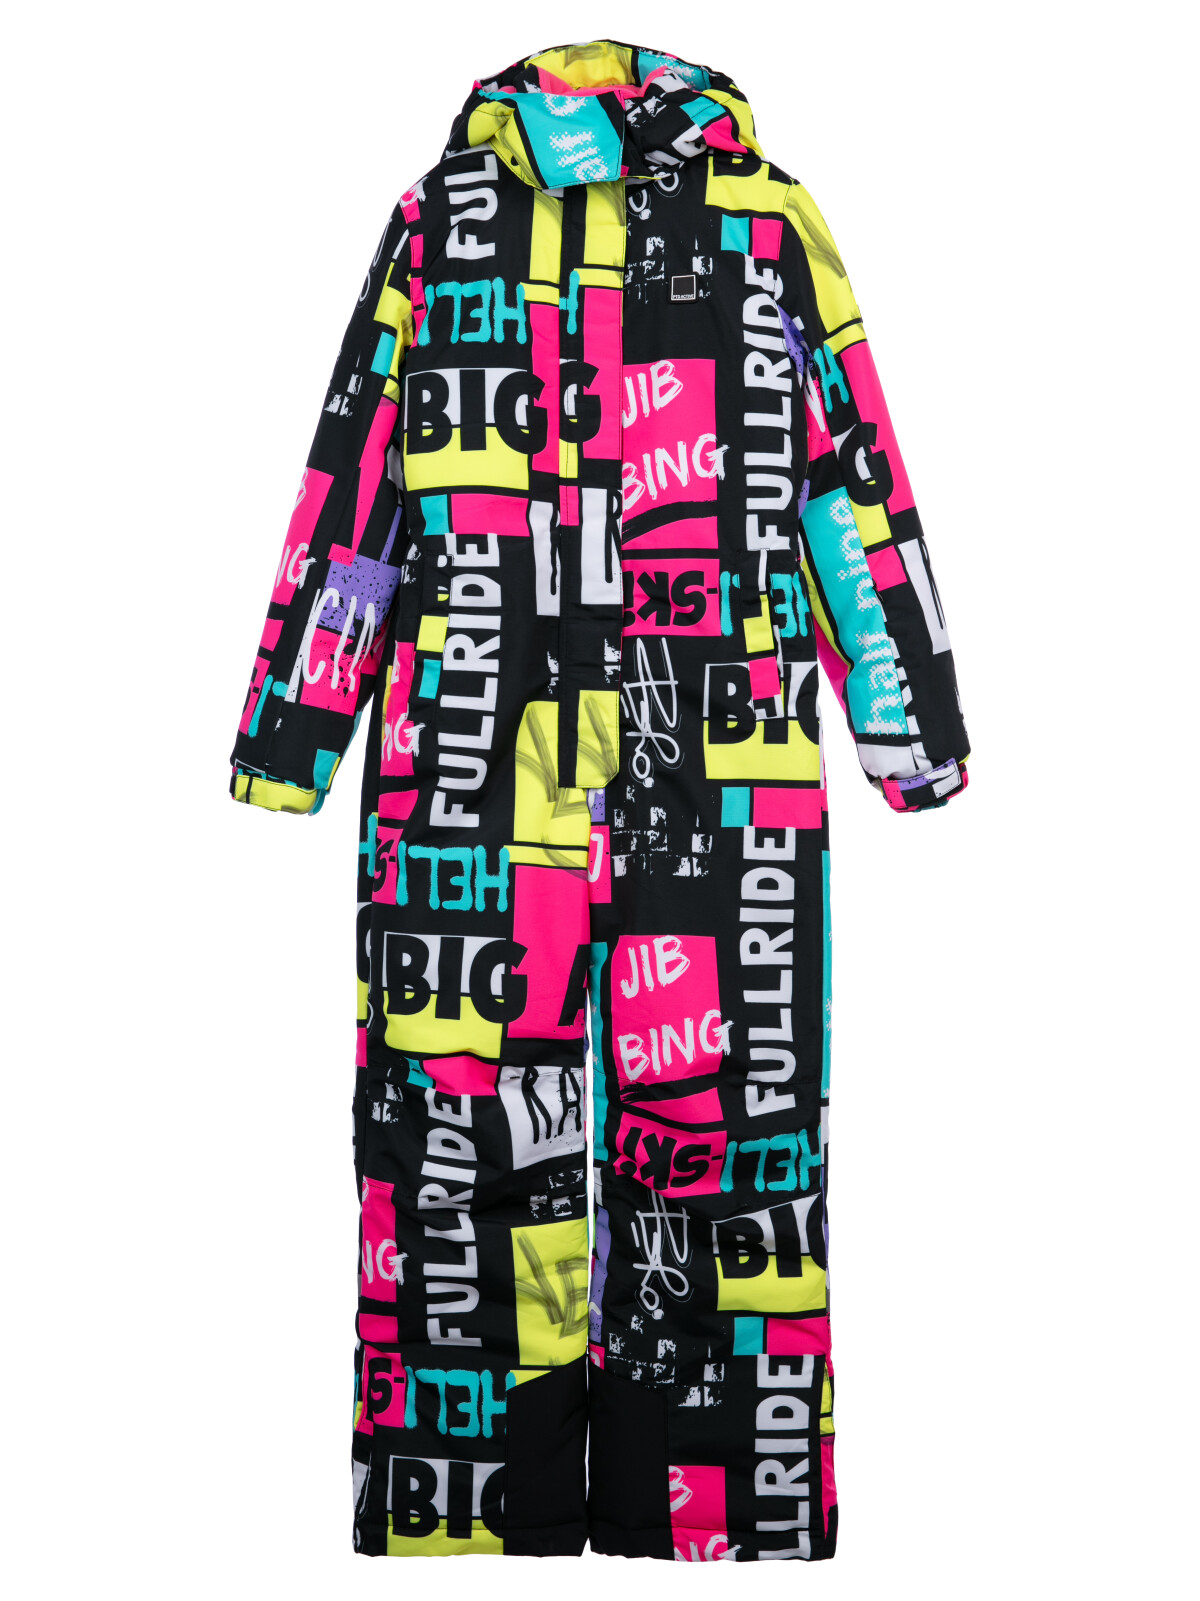 Комбинезон текстильный с полиуретановым покрытием для девочек PlayToday, цветной, 152